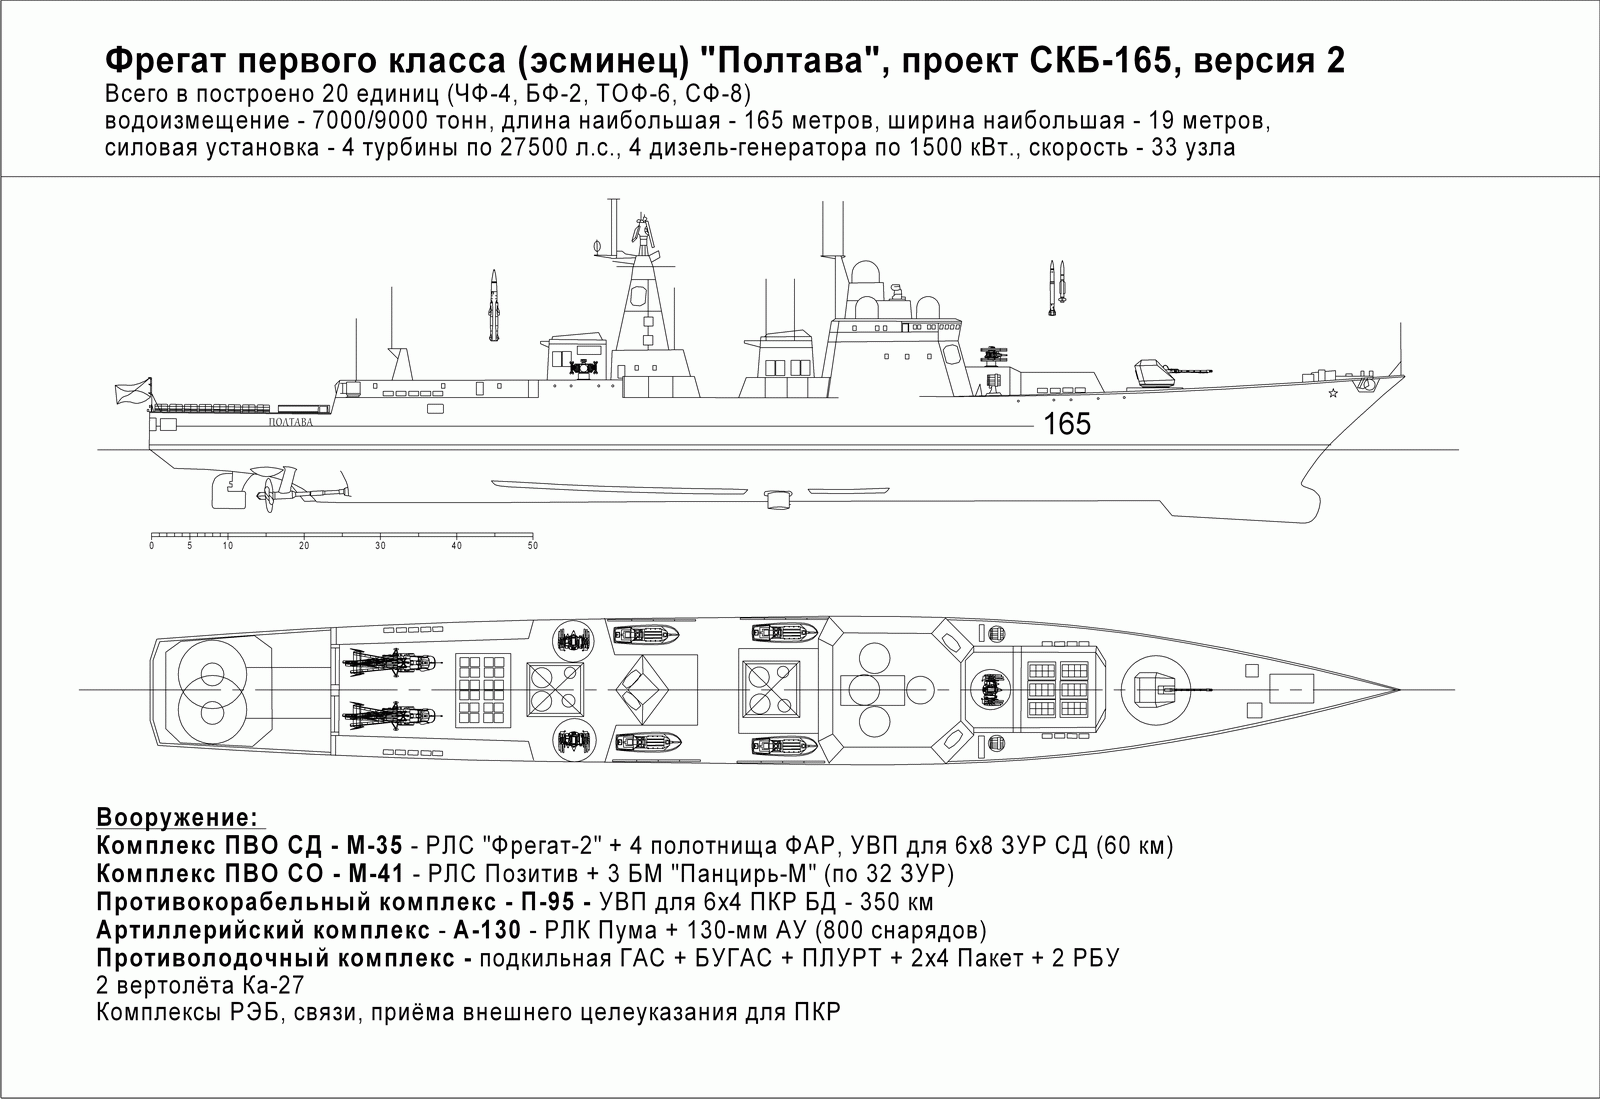 skb-165-2.gif